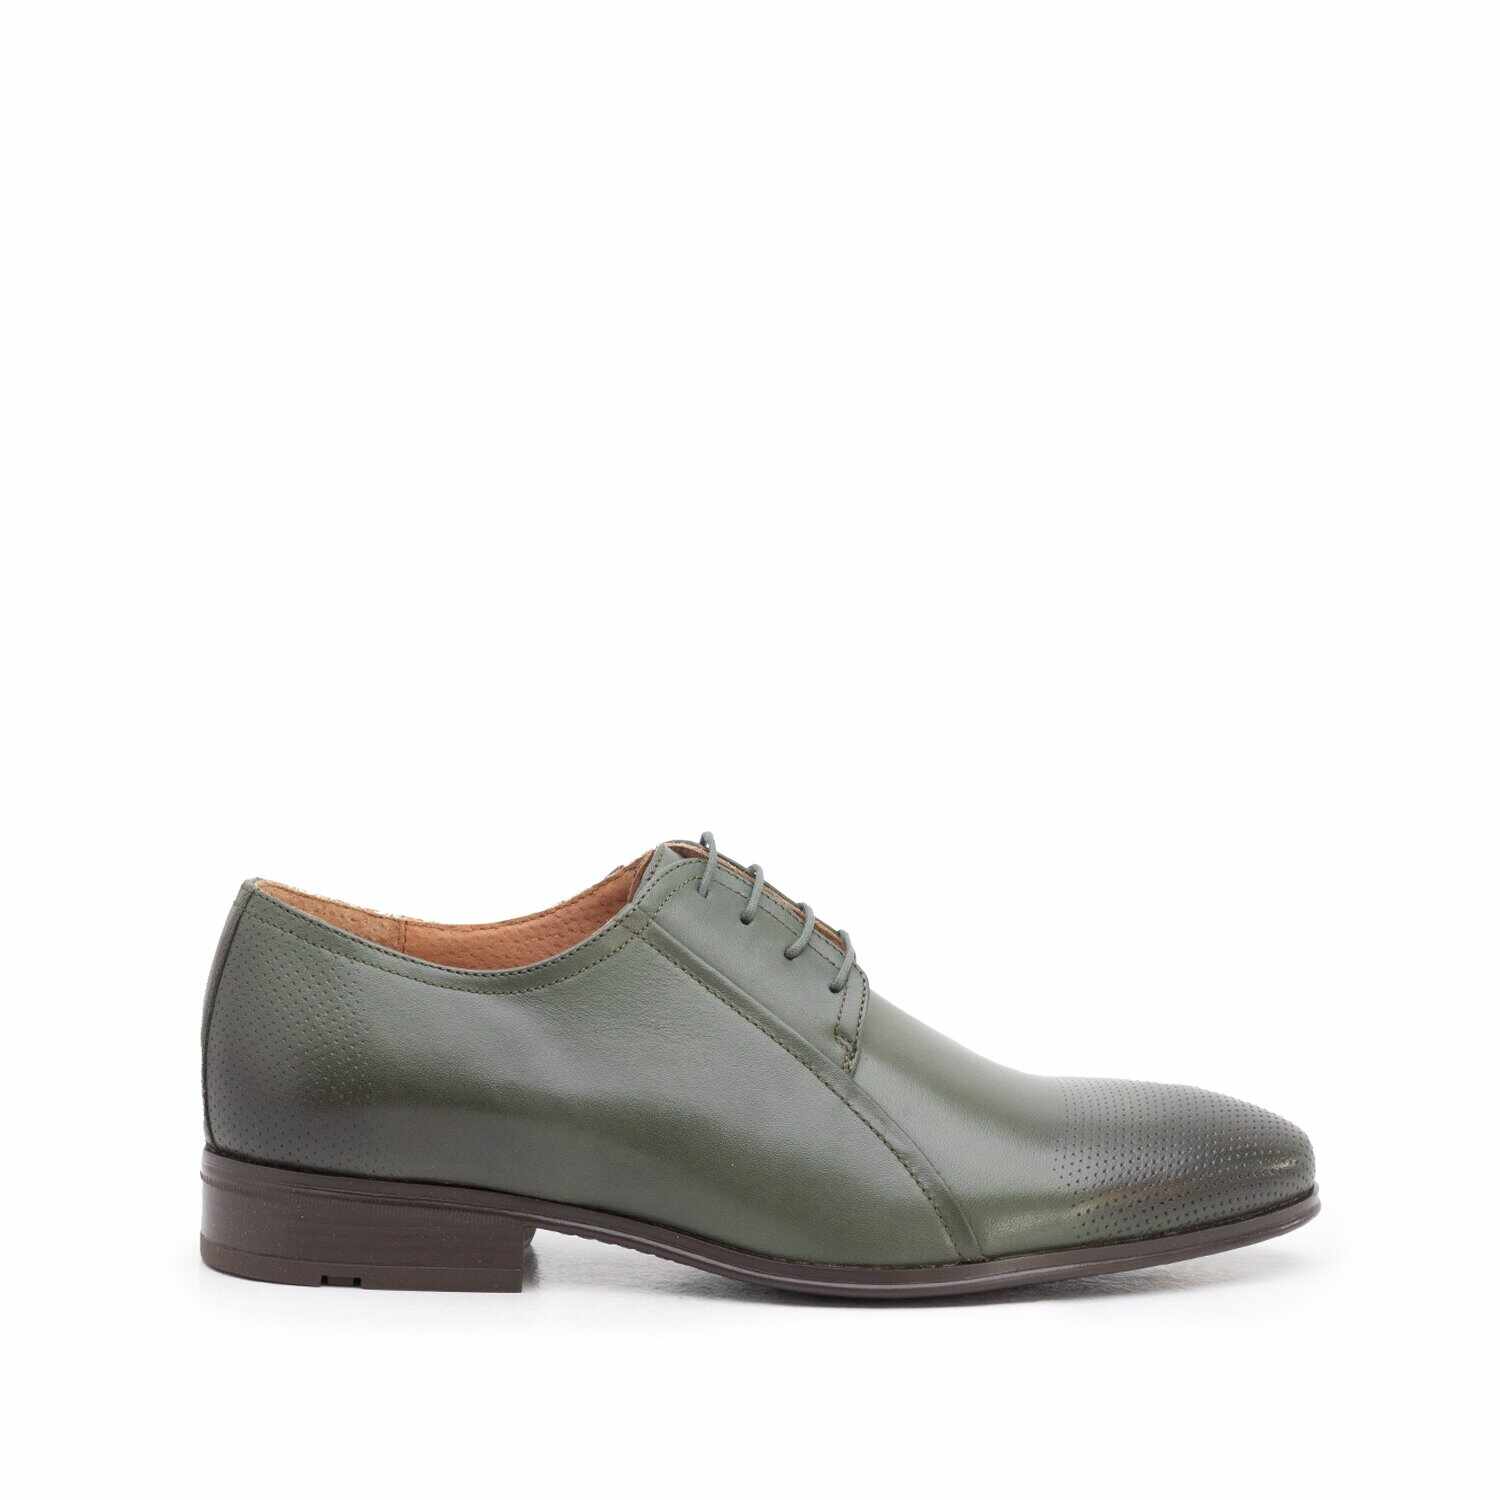 Pantofi eleganți bărbați din piele naturală, Leofex - 743* Verde Box